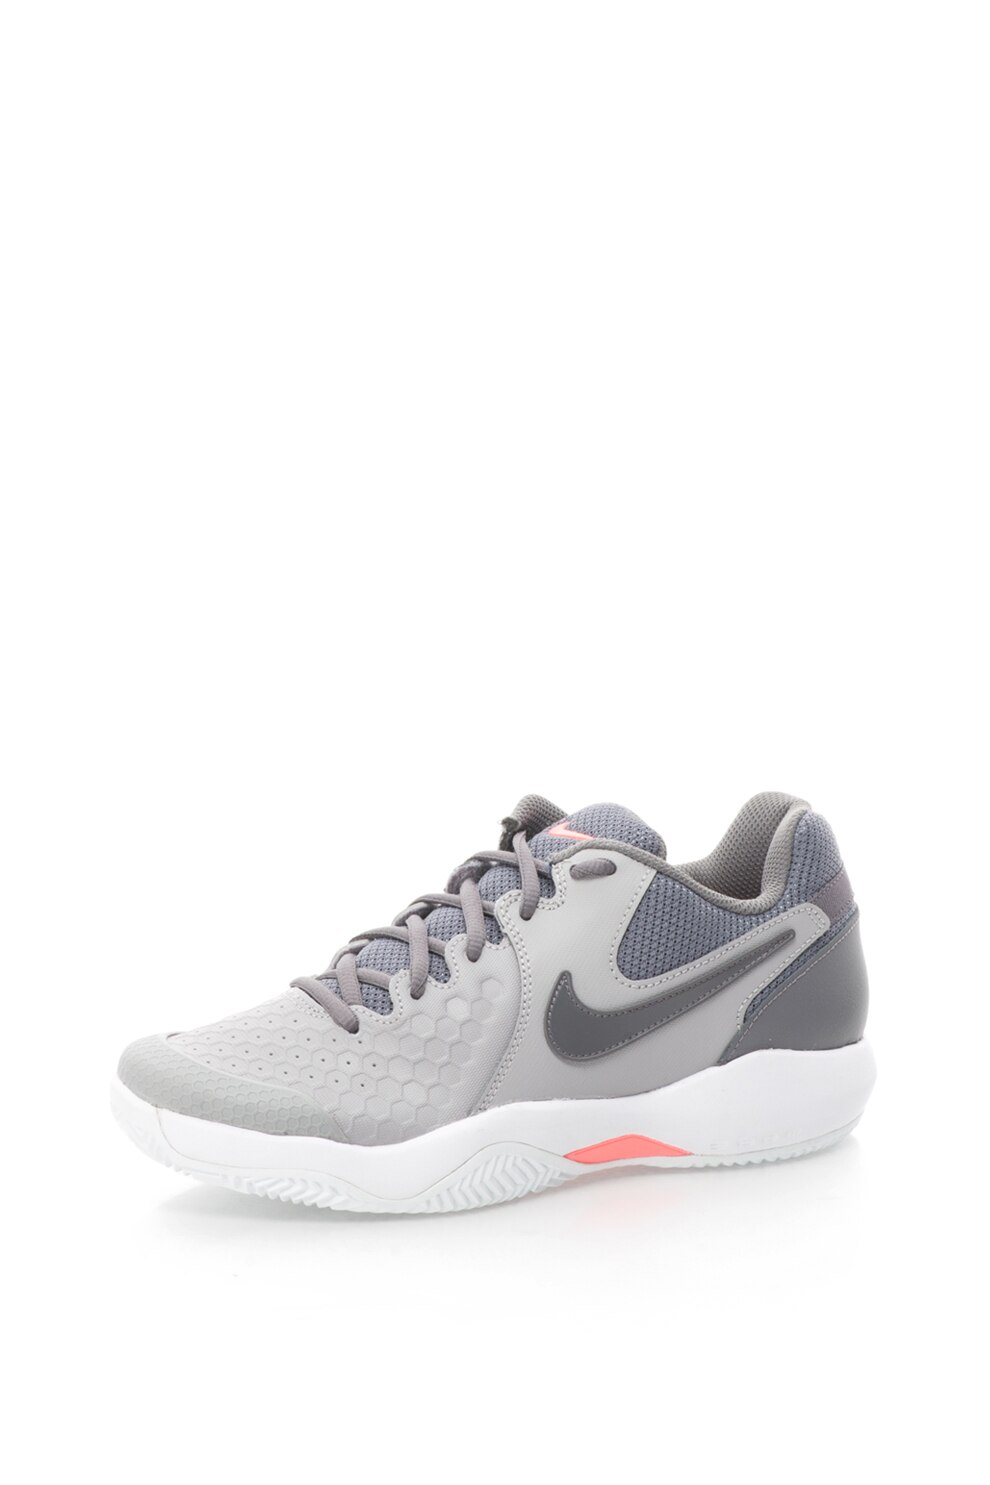 Nike, Air Zoom Resistance CLY teniszcipő, 9